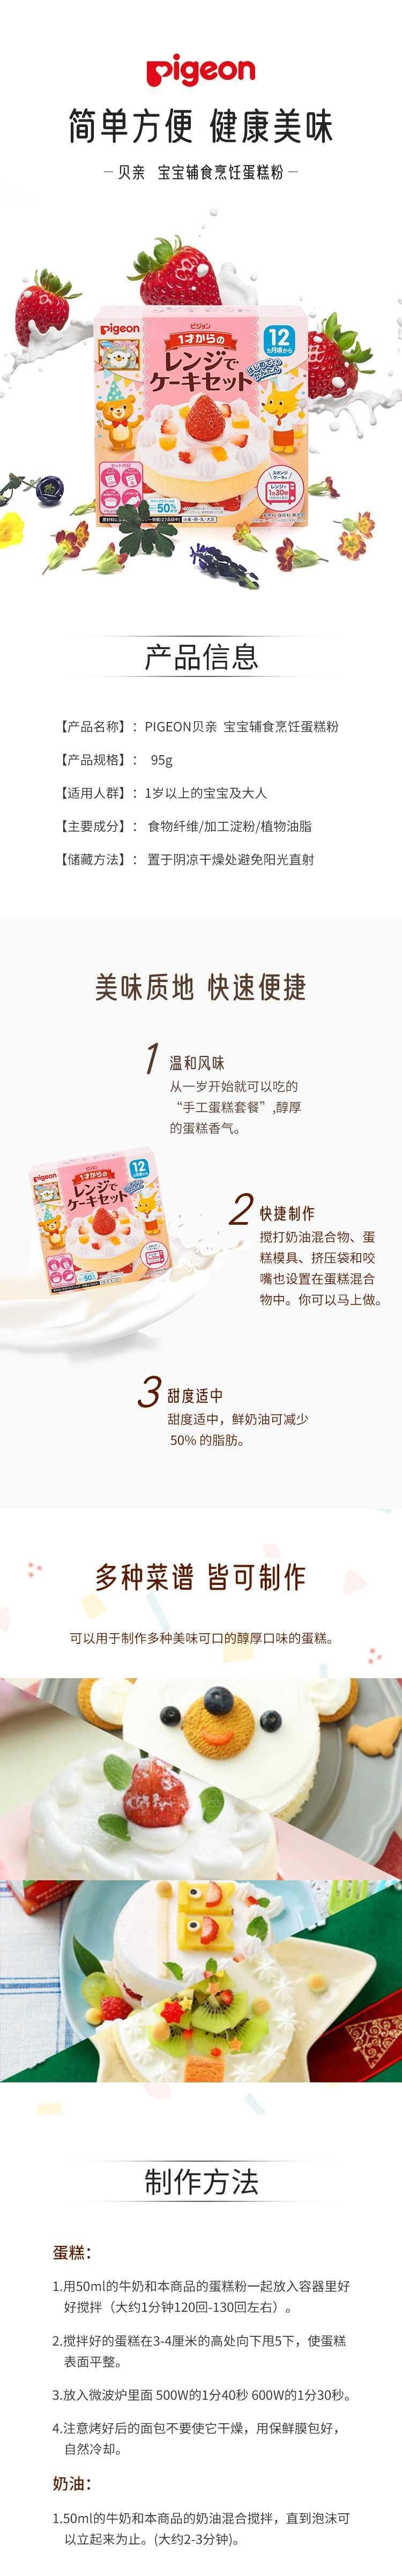 【日本直效郵件】PIGEON貝親 寶寶輔食 烹飪蛋糕粉 12個月+ 57g蛋糕粉+38g鮮奶油粉